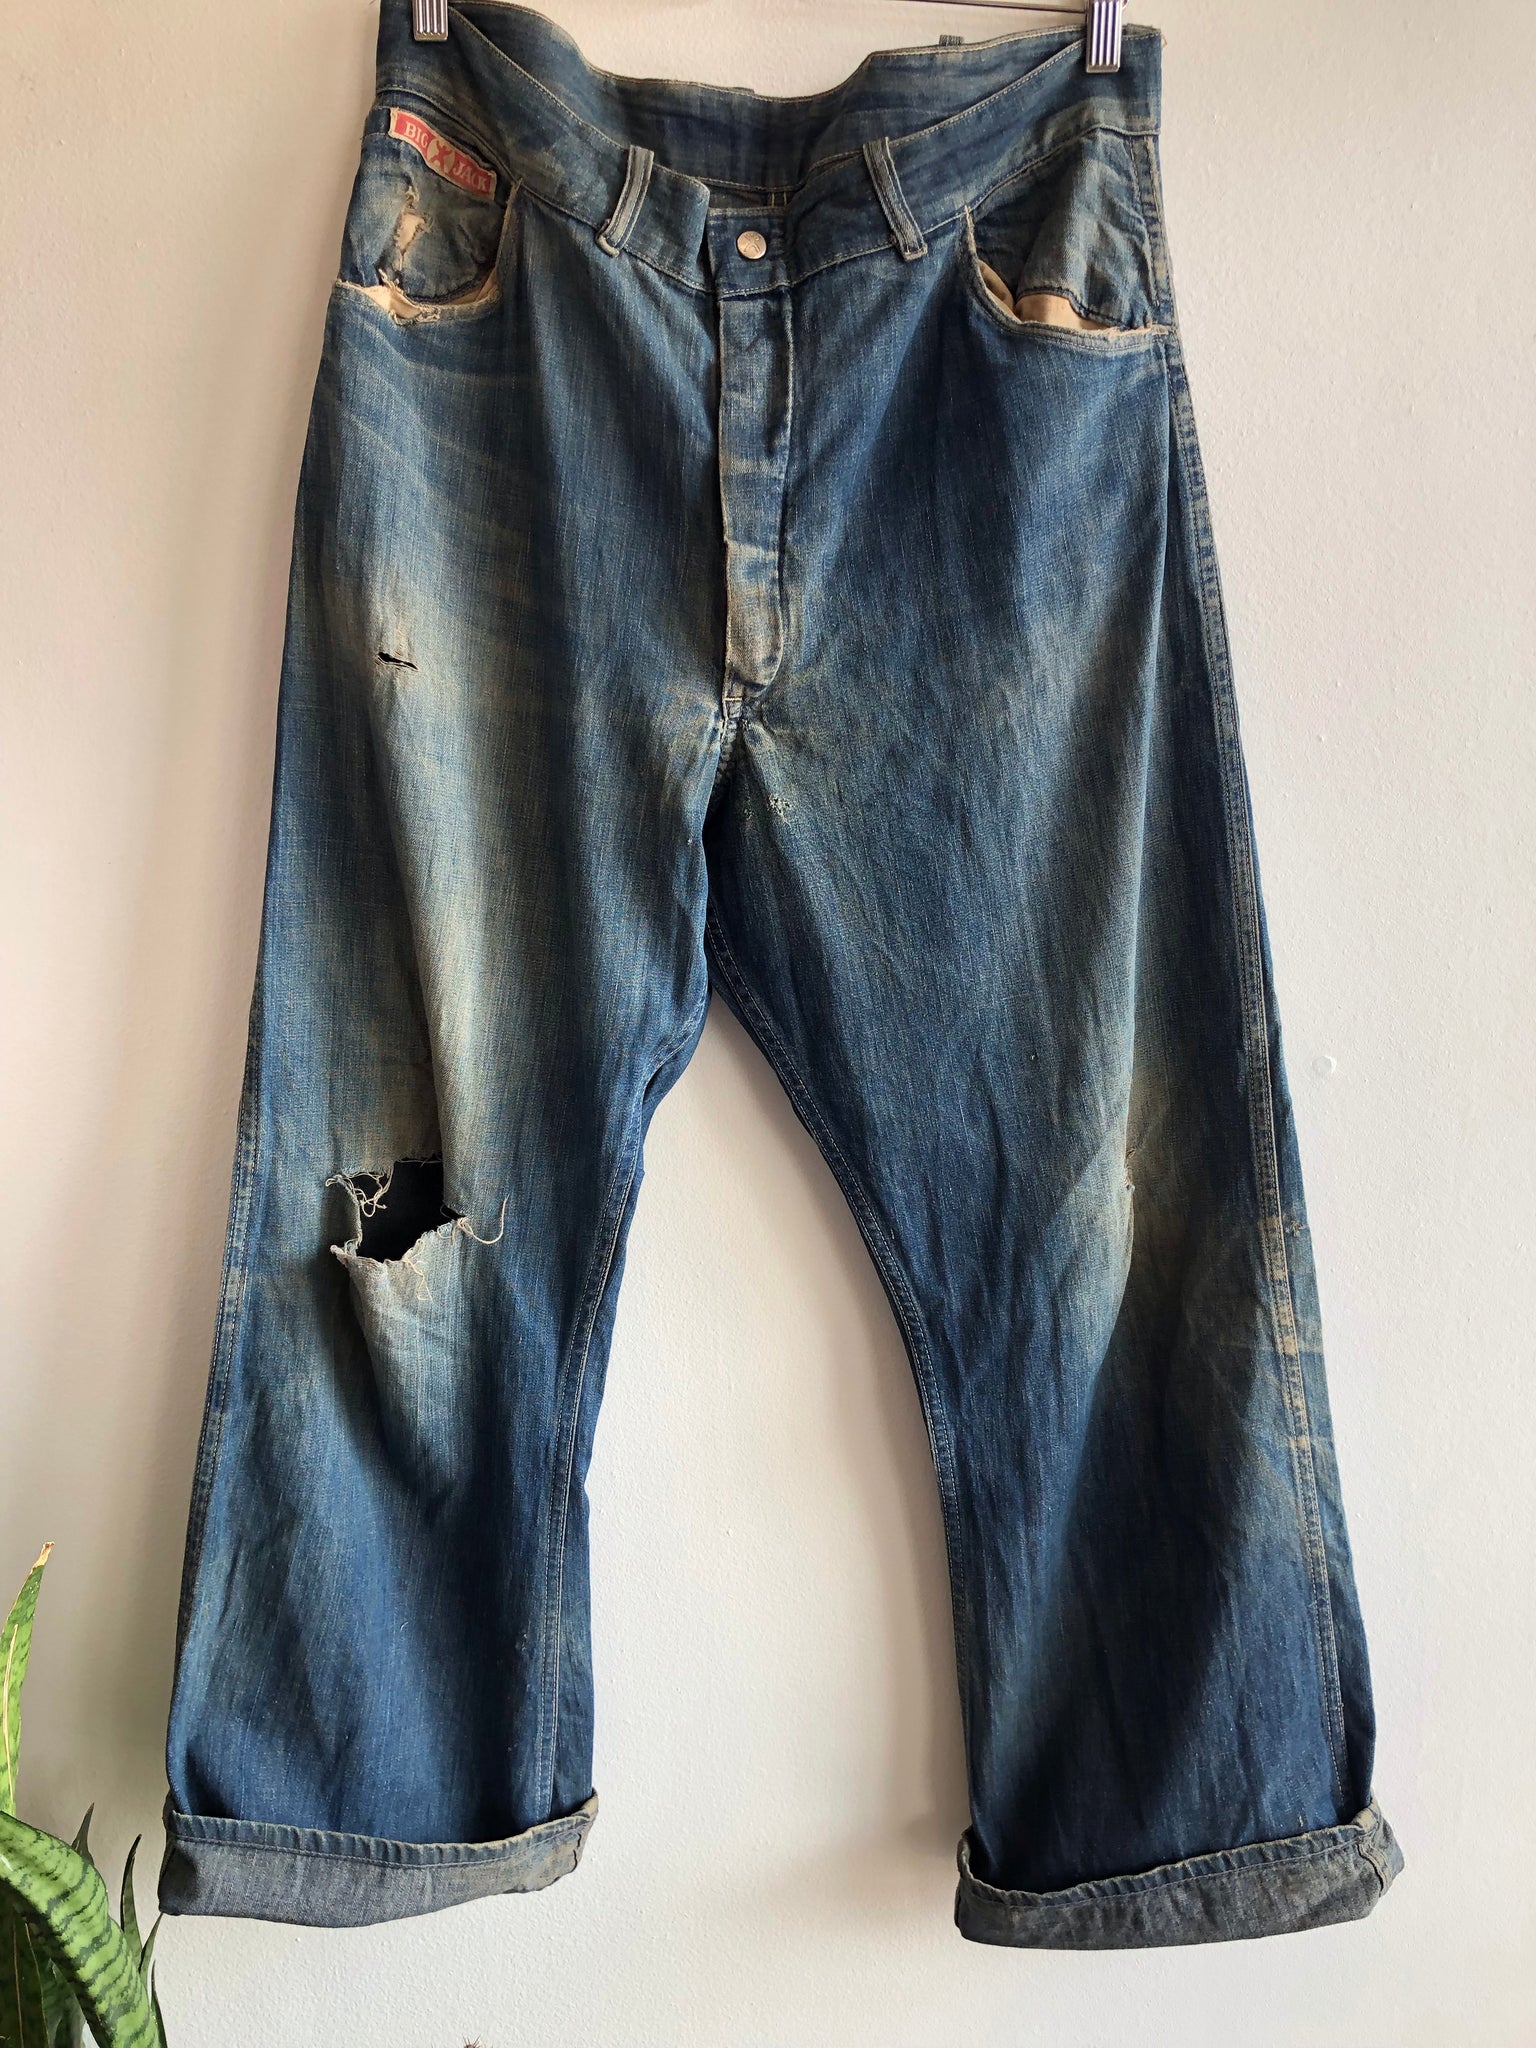 Vintage 1940’s “Big Jack” Brand Lace Back Denim Work Jeans